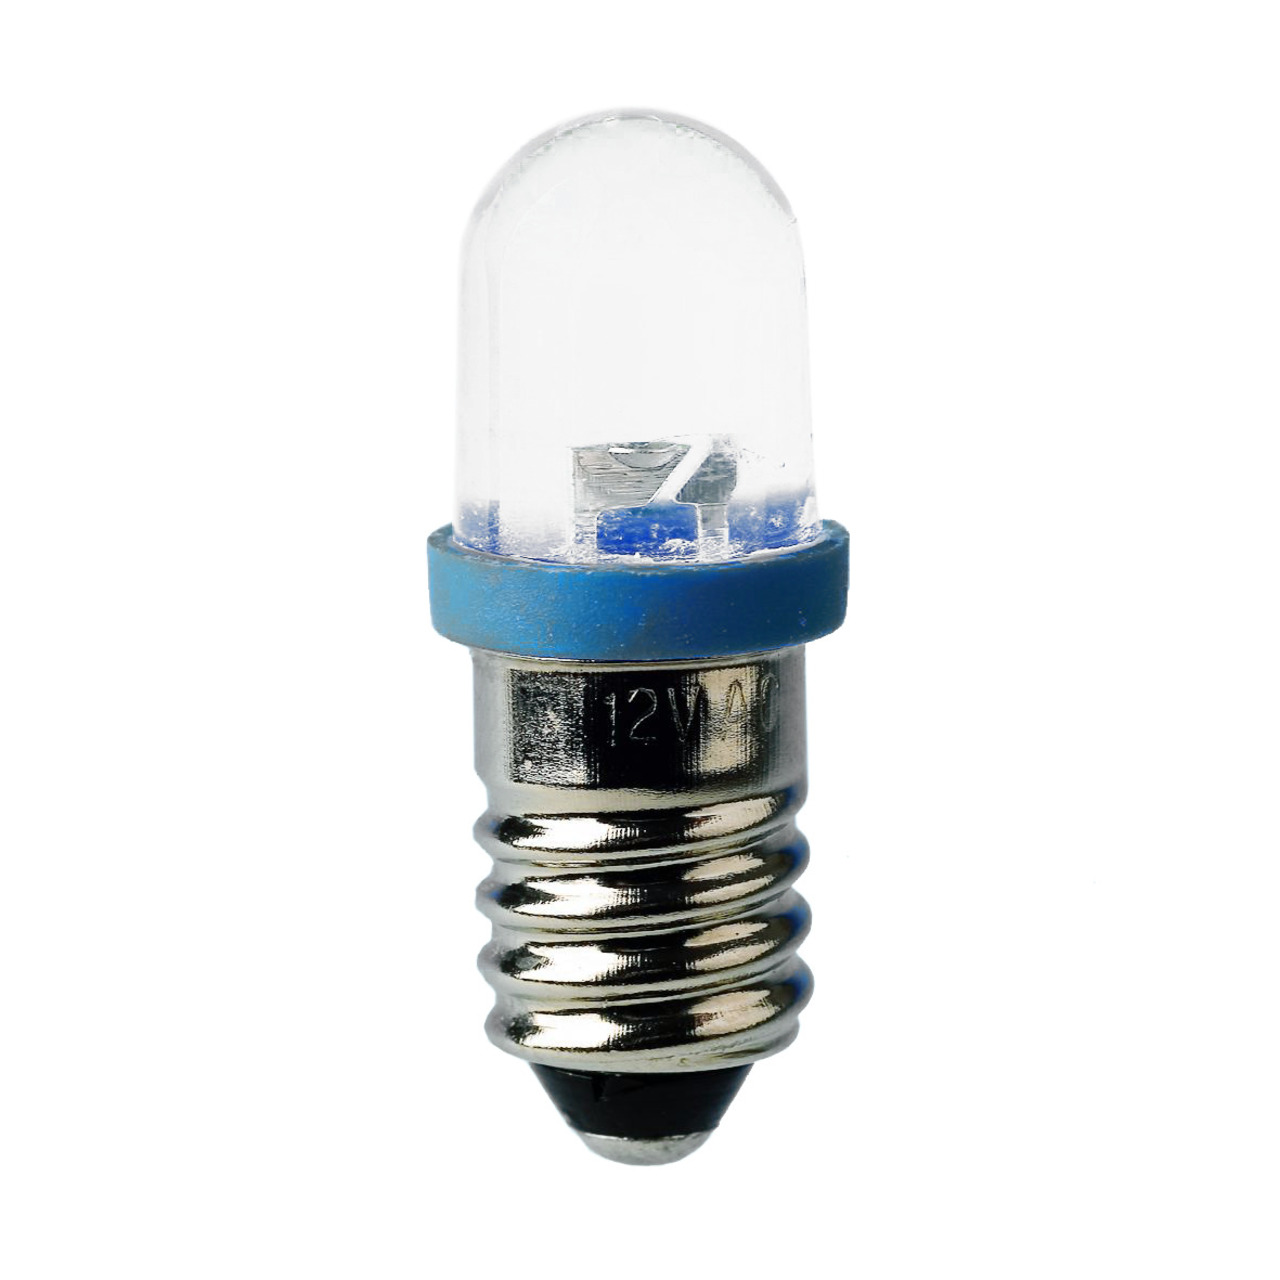 Barthelme LED-Lampe E10 mit Brckengleichrichter- 10 x 28 mm- 230 V- rot